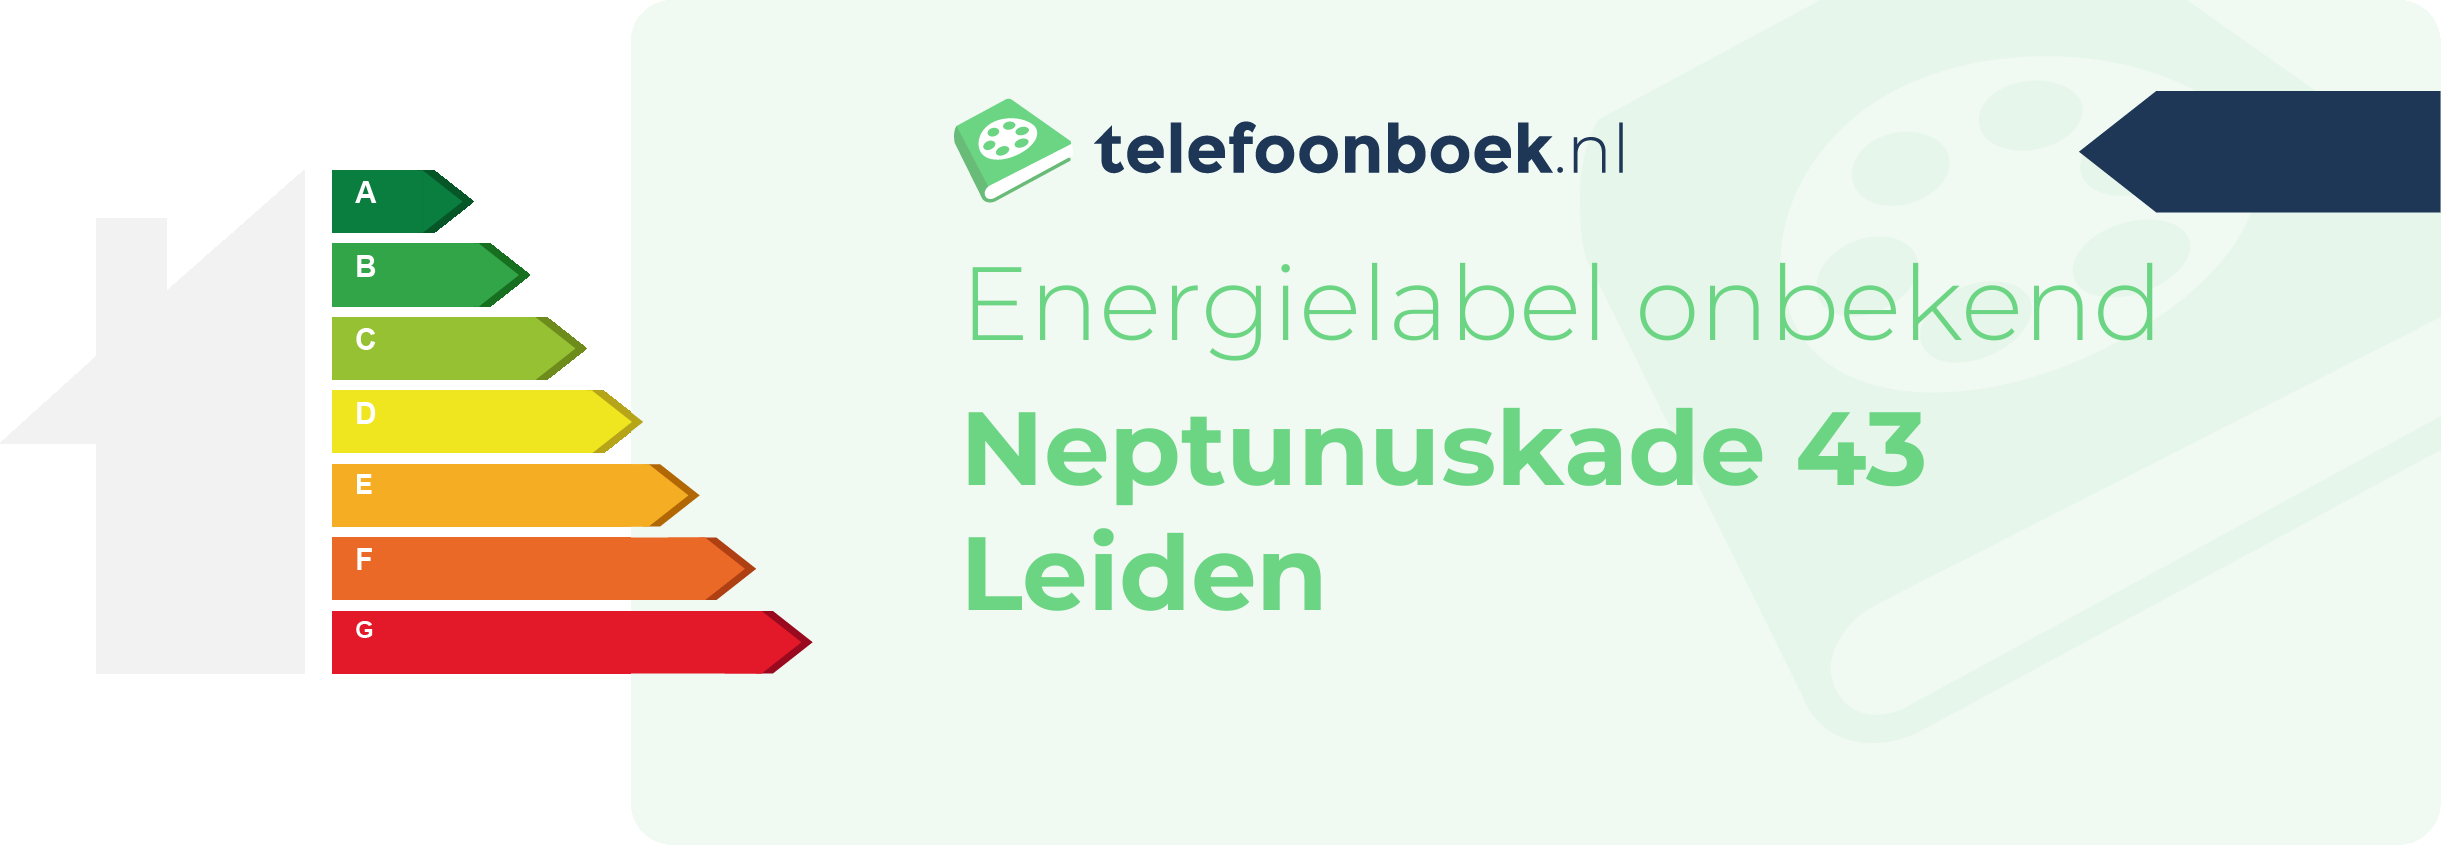 Energielabel Neptunuskade 43 Leiden